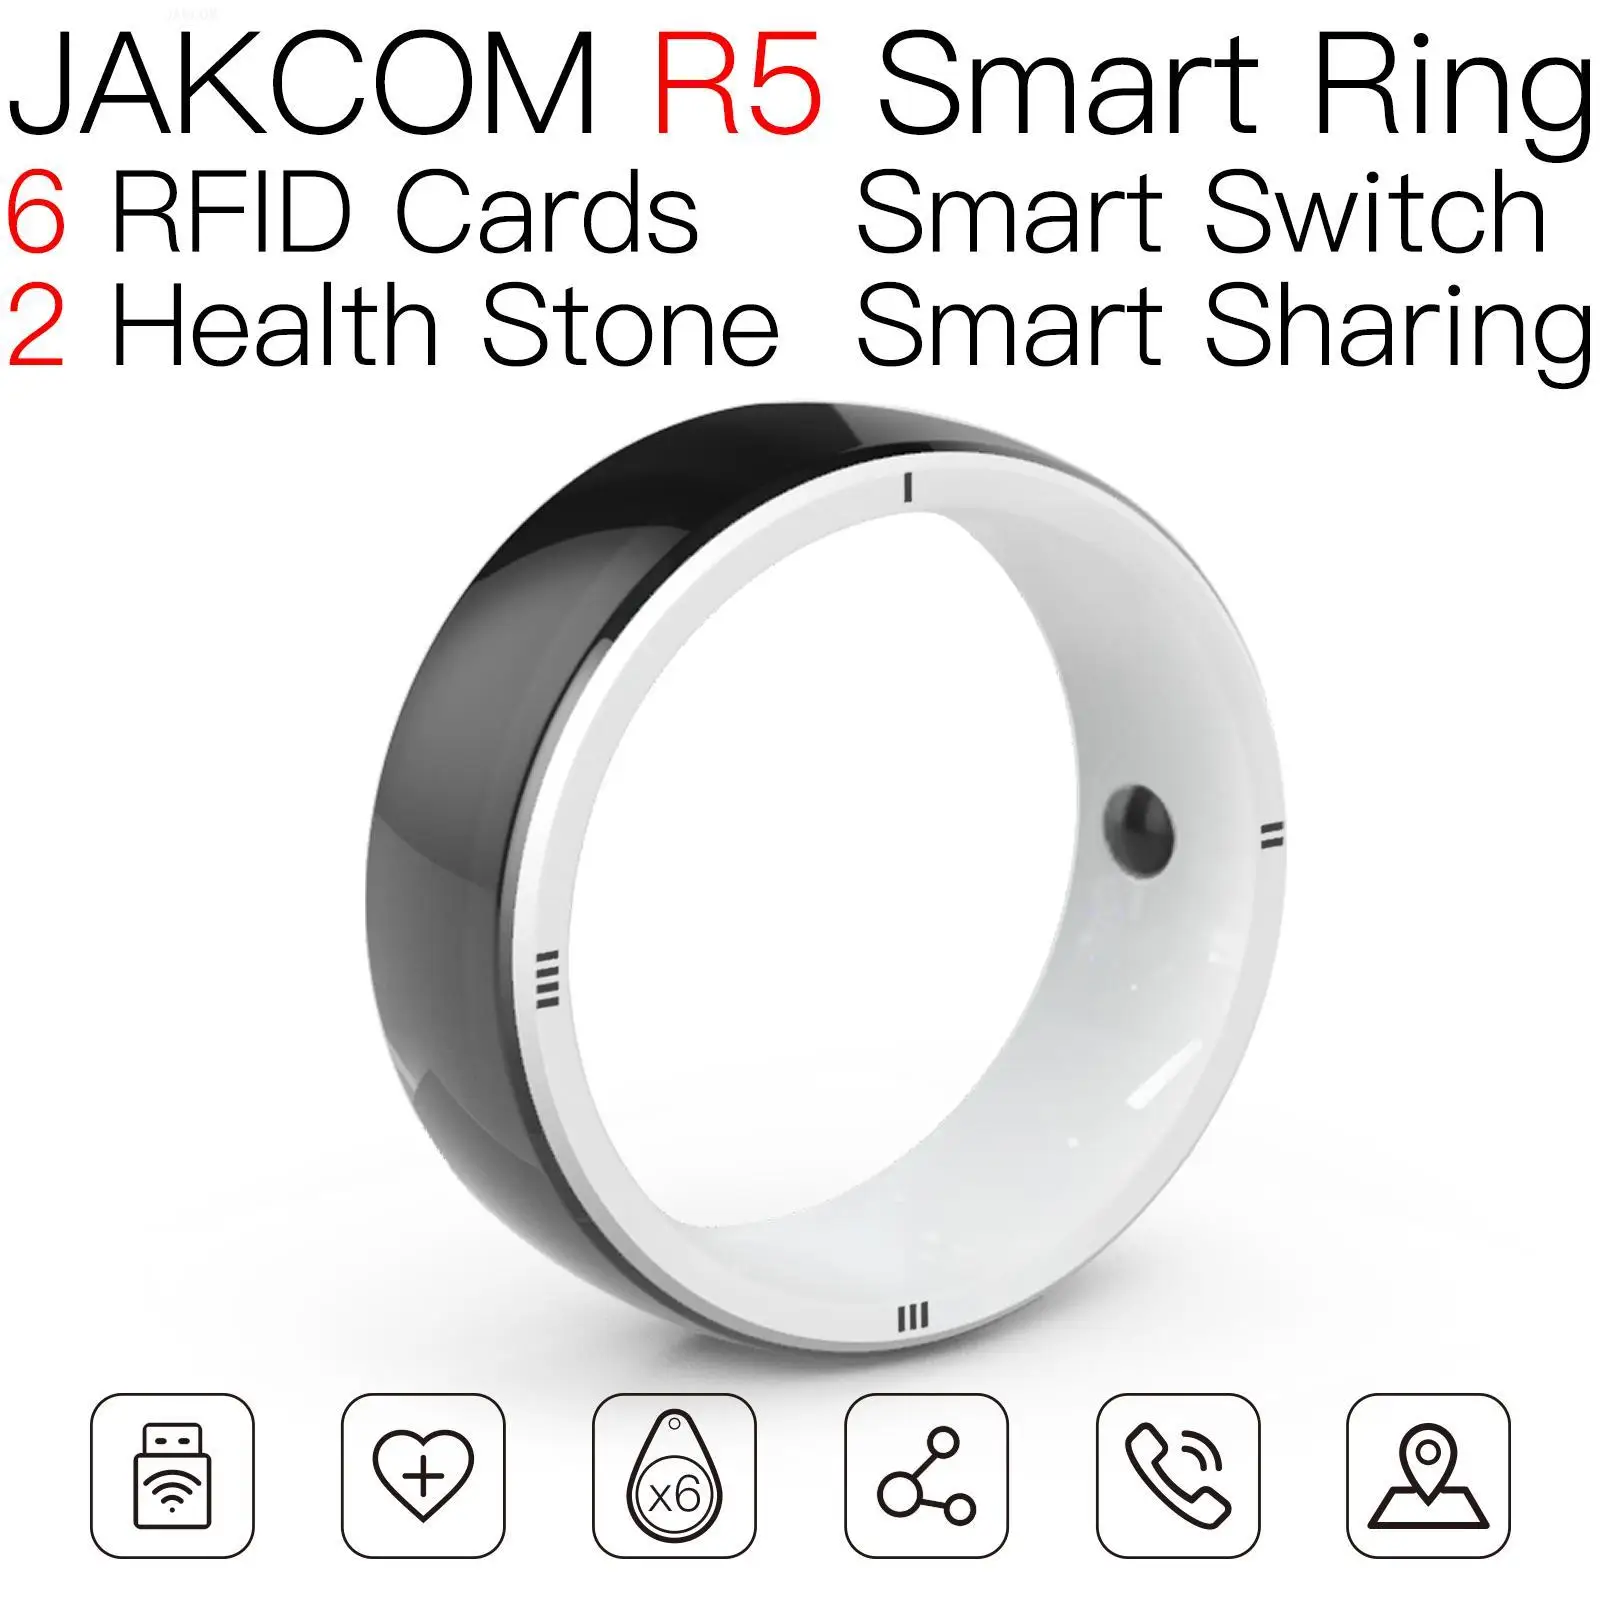 

Смарт-кольцо JAKCOM R5, лучше, чем uhf, rfid-карта, супер программное обеспечение, программы, паролем, cracker, netflix, Франция, ic-тег, аккаунт для 1